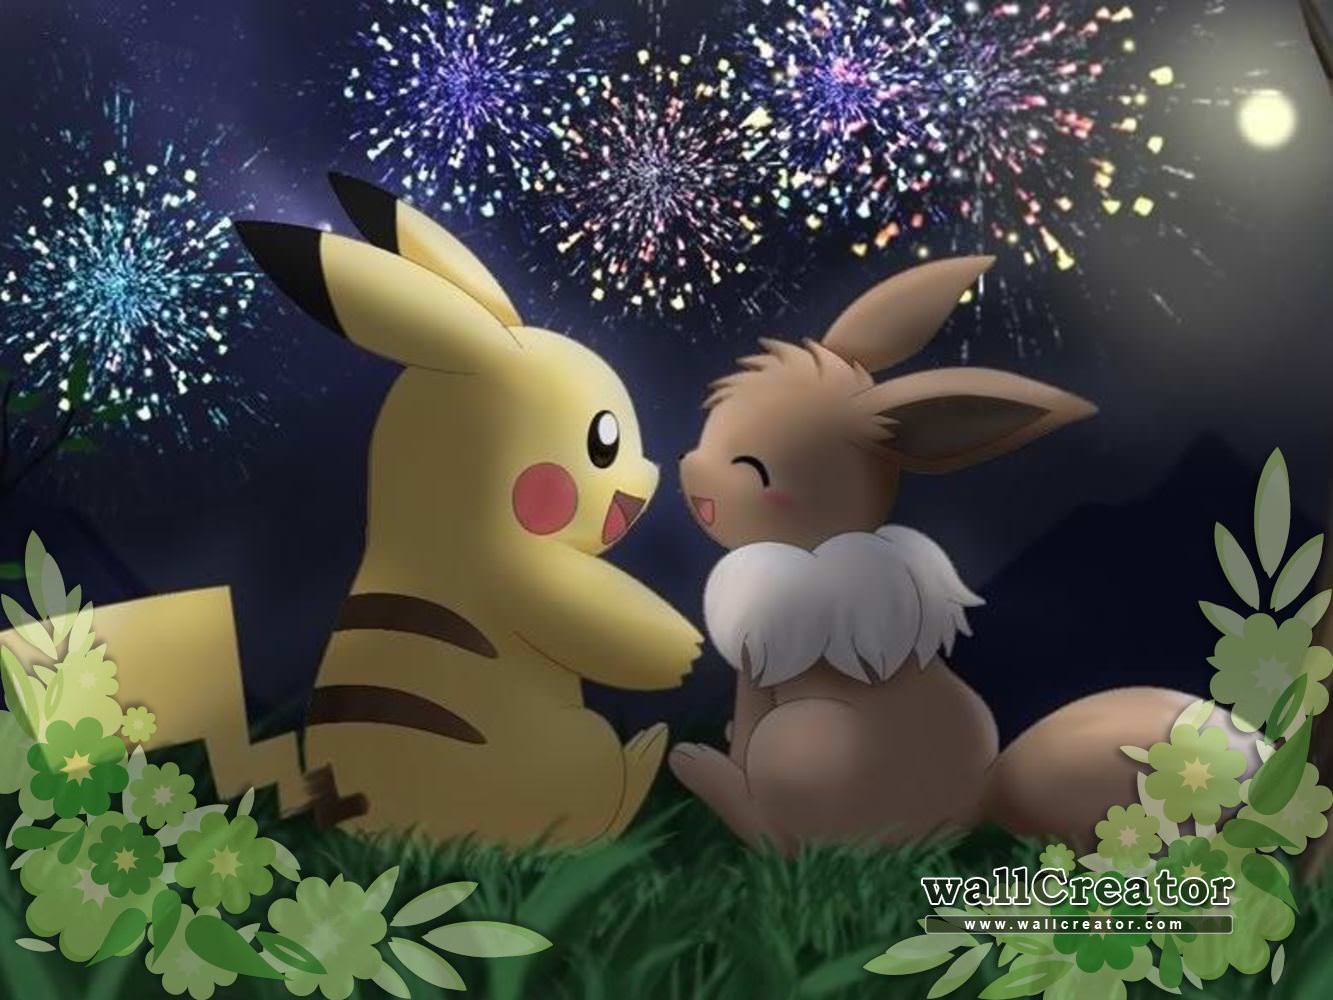 Free Download Cute Pikachu Pokemon Wallpaper In Love  फट शयर